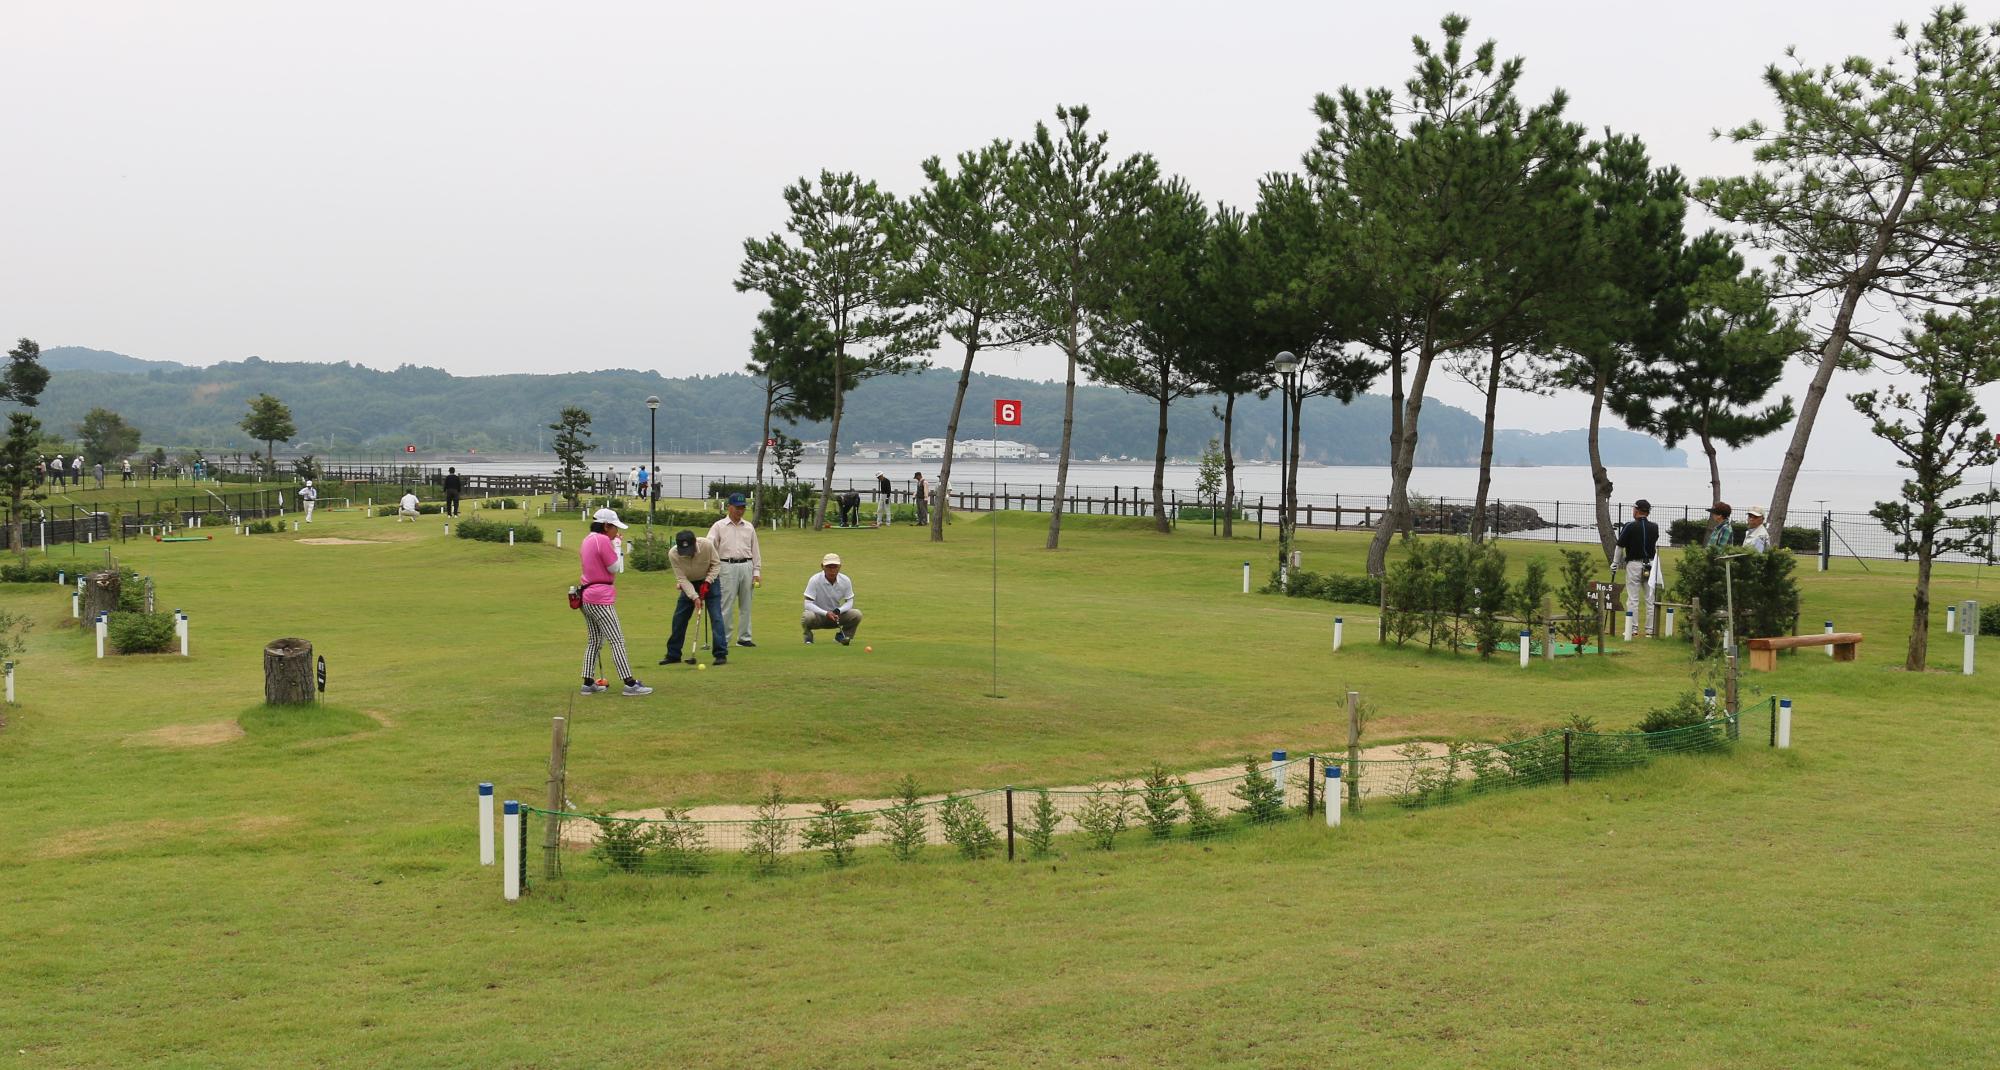 糸ヶ浜パークゴルフ場で大勢がパークゴルフを楽しむ様子を遠くから撮った写真